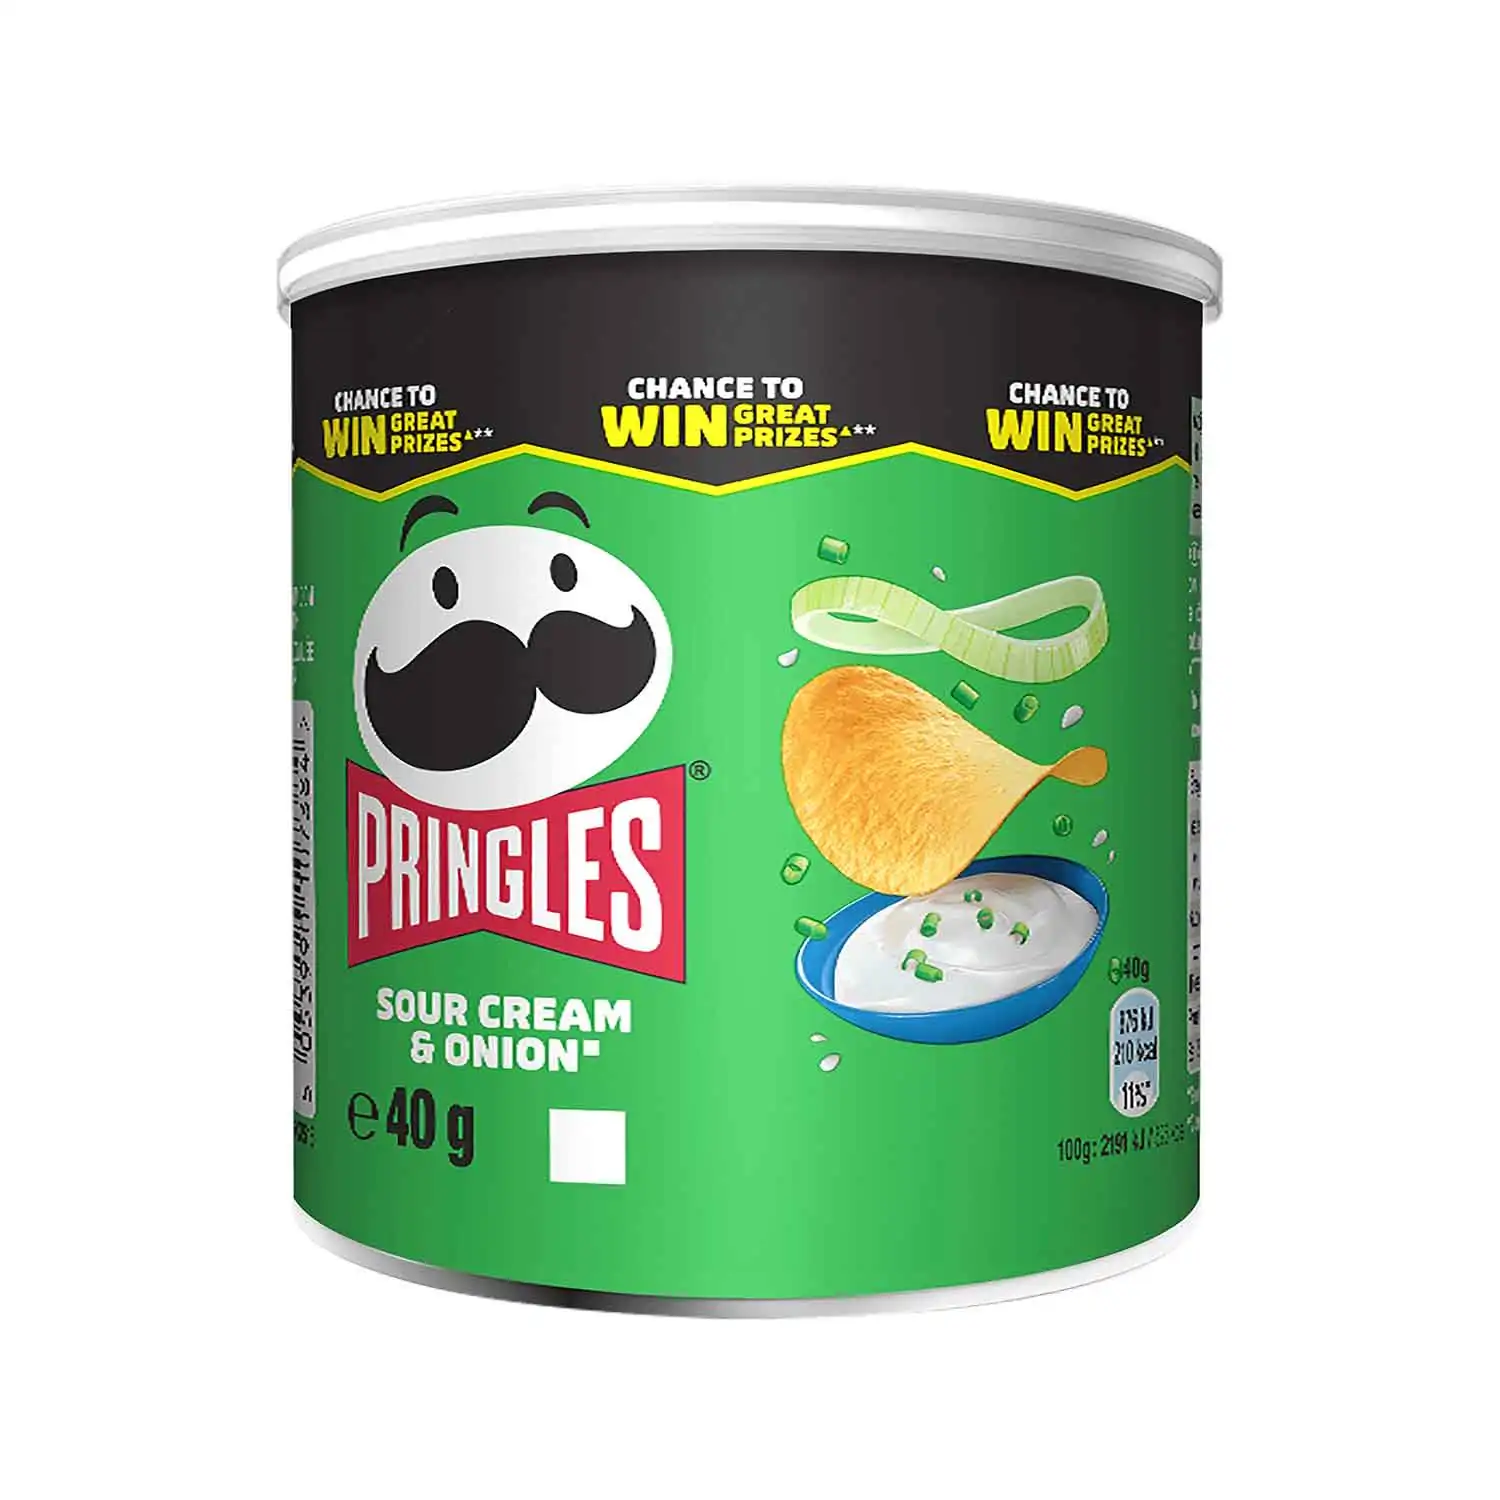 Pringles sour cream & onion 40g